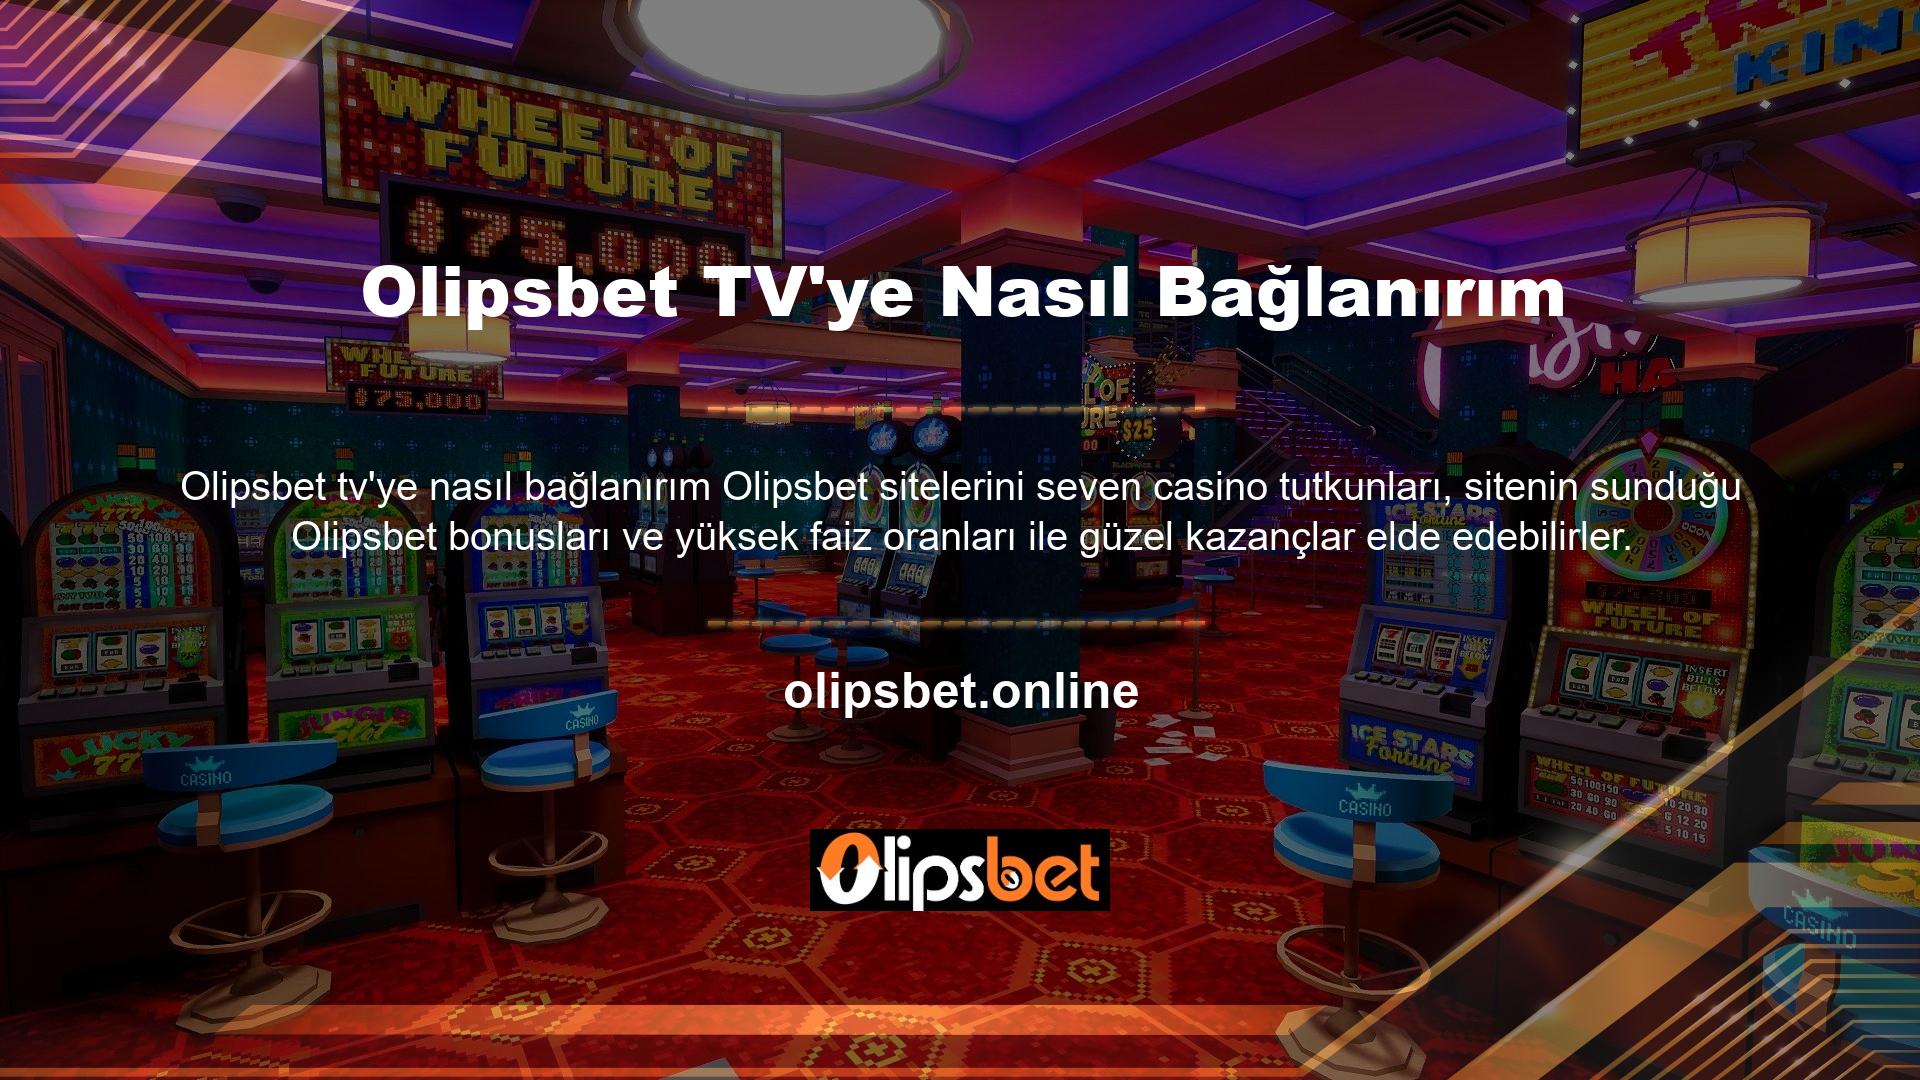 Olipsbet web sitesi, casino tutkunlarının bahislerini takip edebilmeleri için Olipsbet TV platformunu da oluşturmuştur